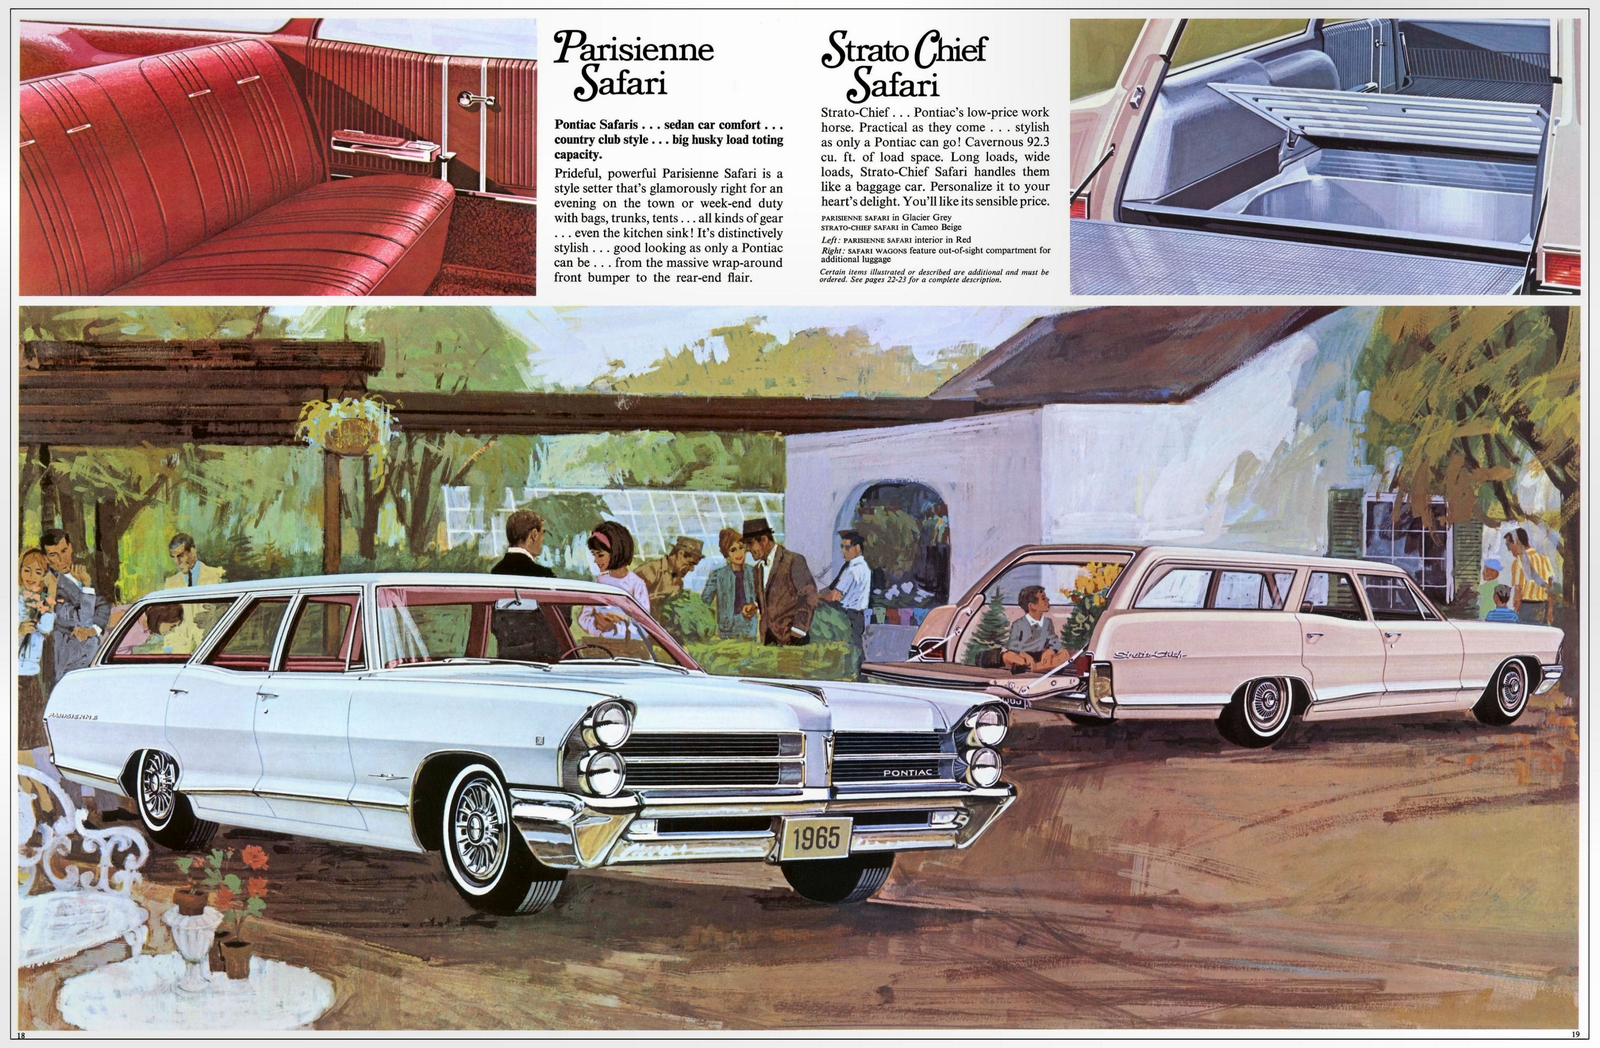 n_1965 Pontiac Prestige (Cdn)-18-19.jpg